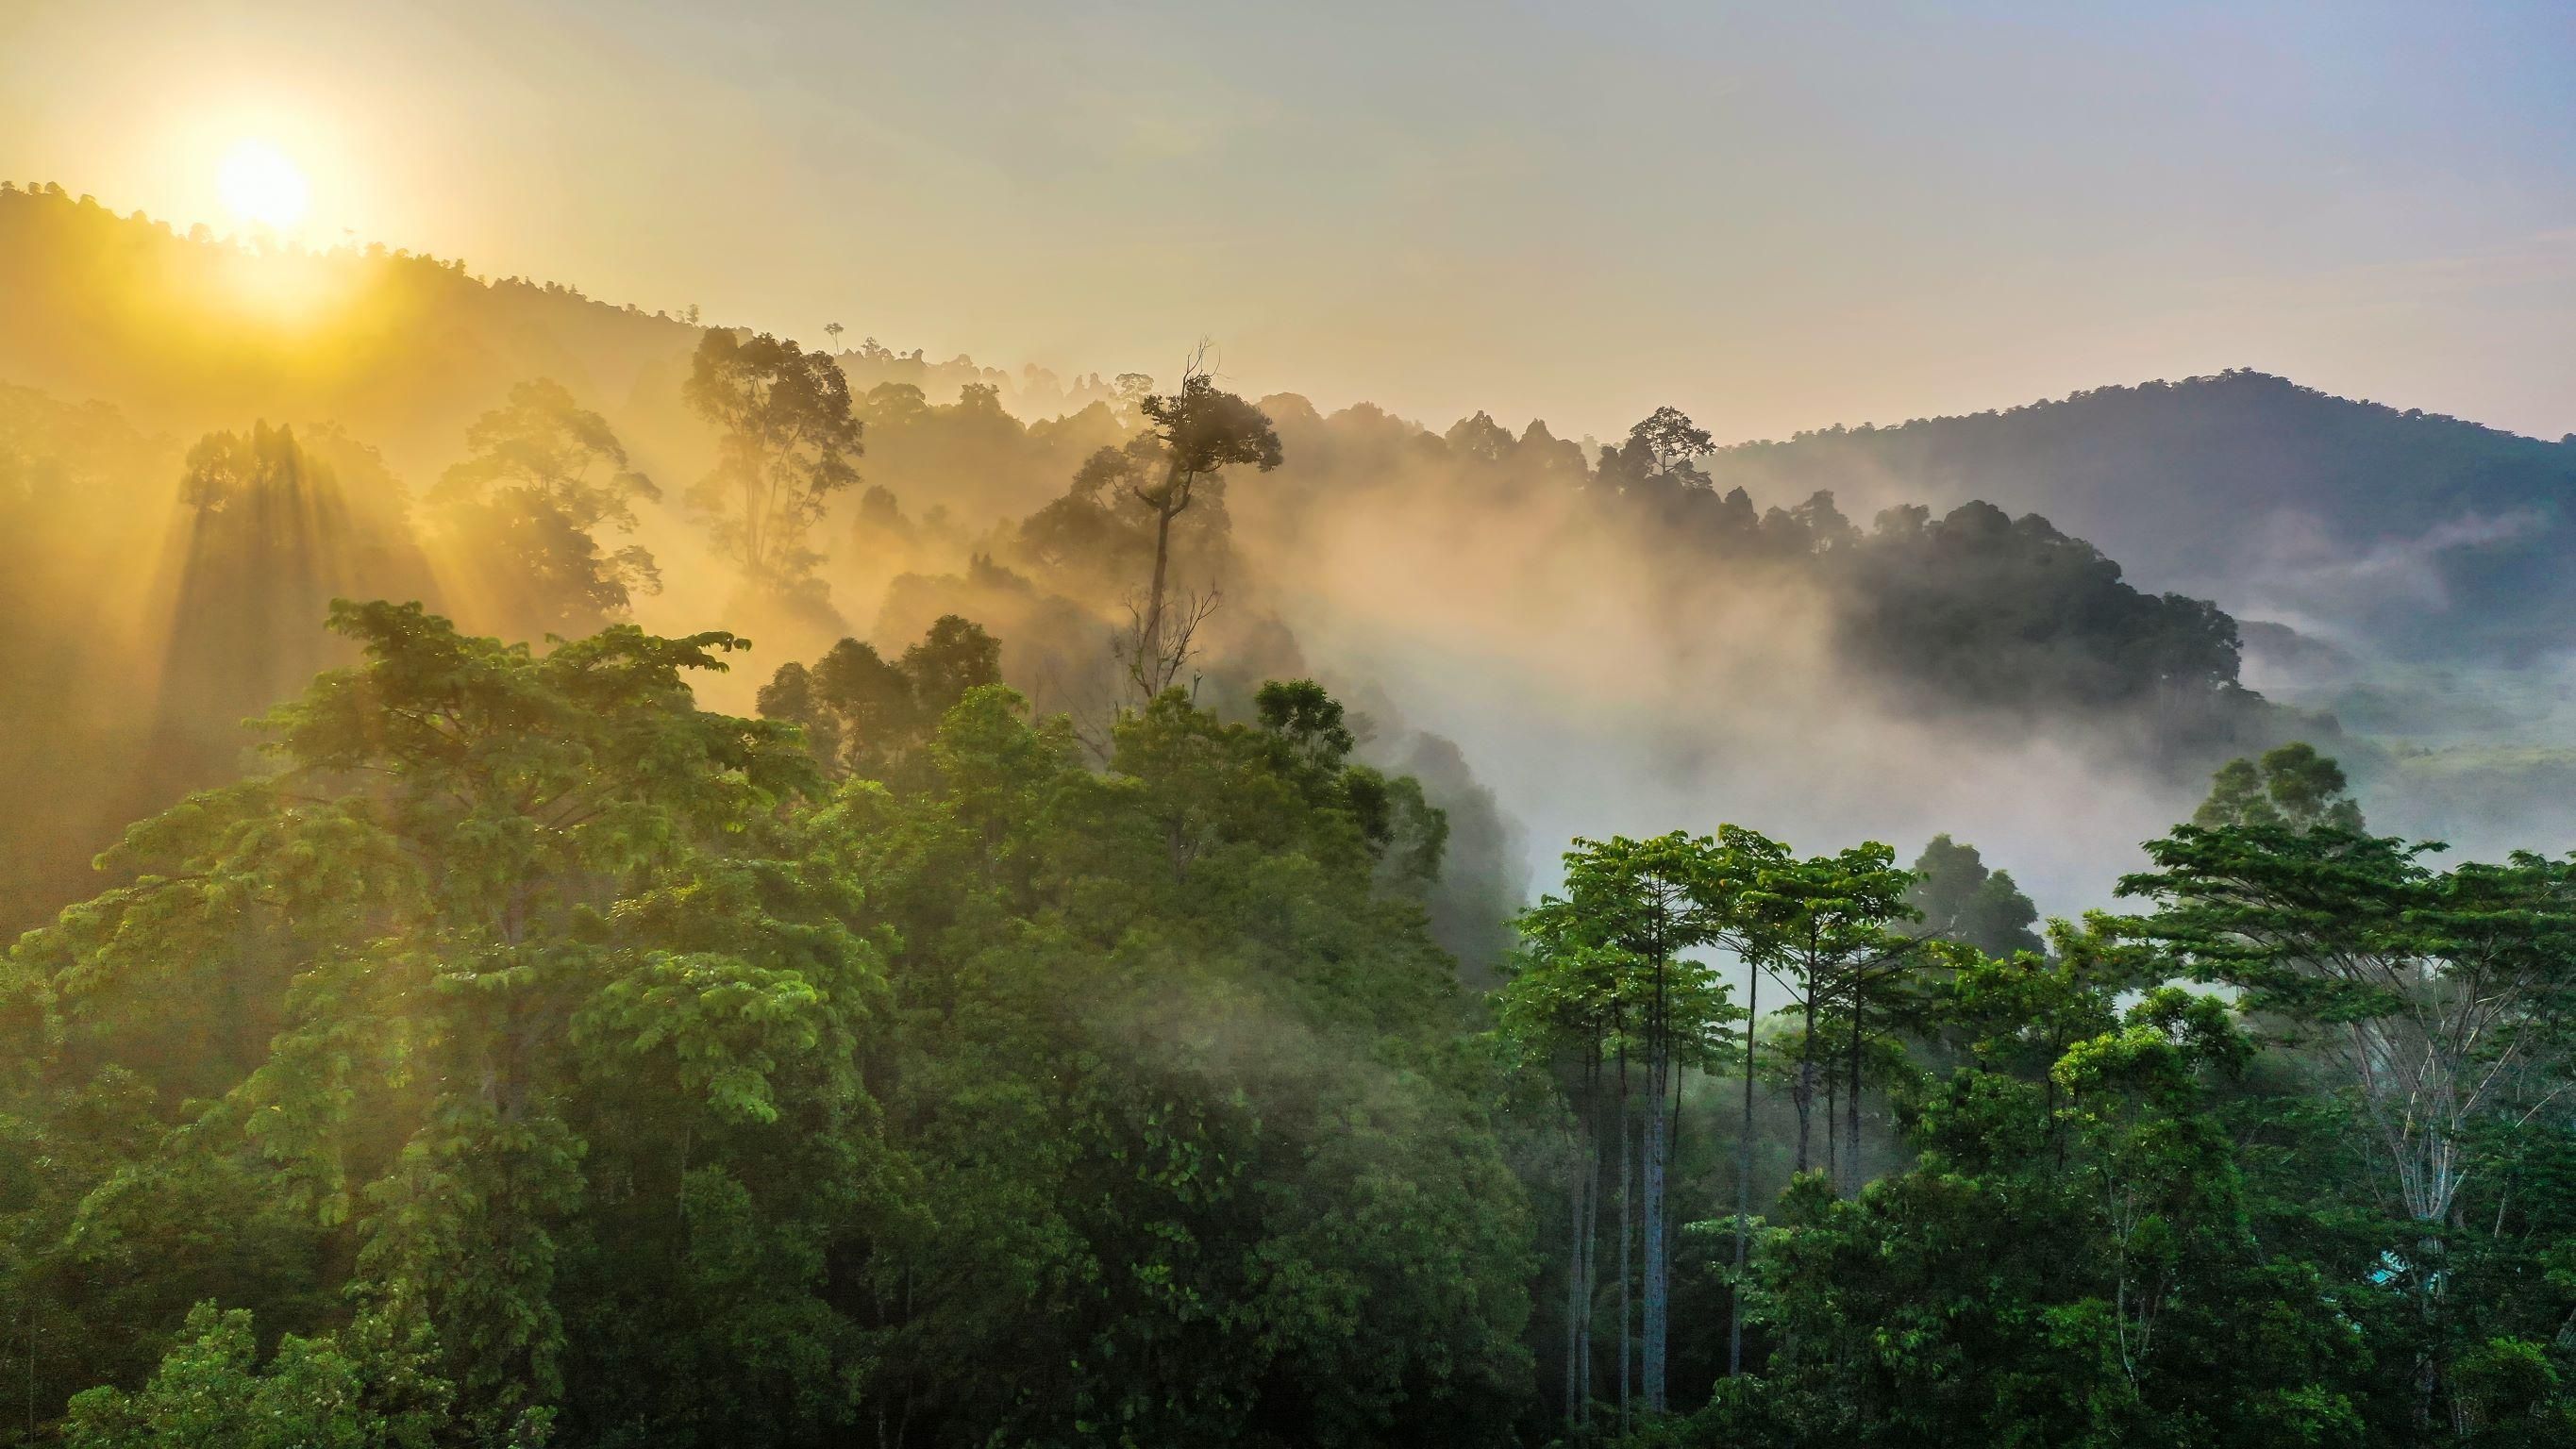 Megmenekülhetnek az esőerdők a kivágástól